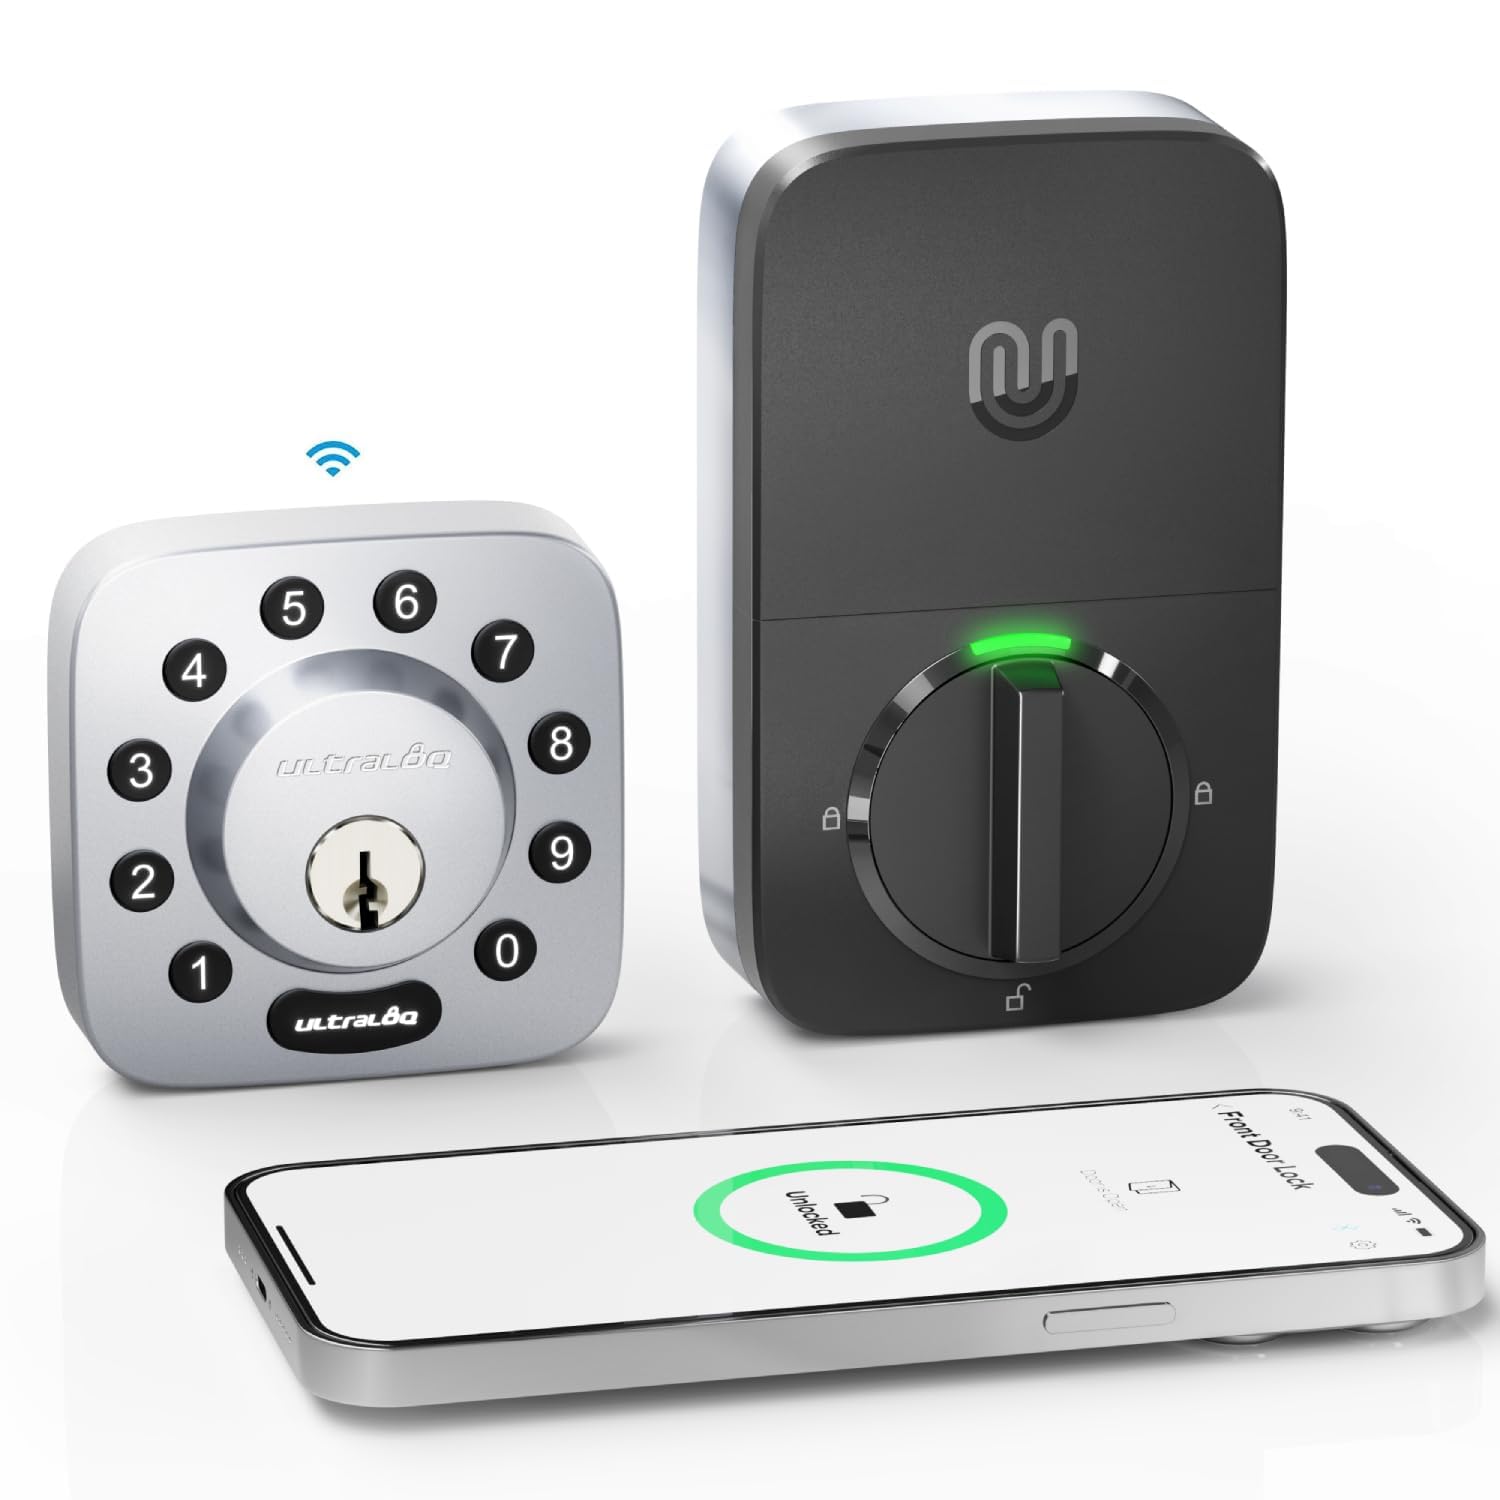 ULTRALOQ U-Bolt WiFi Smart Lock with Built-in WiFi, 7-in-1 Keyless Entry Door Lock with Door Sensor, Works with Alexa, Google Home, WiFi Deadbolt, Door Status Alert, Remote Control, Commercial Level